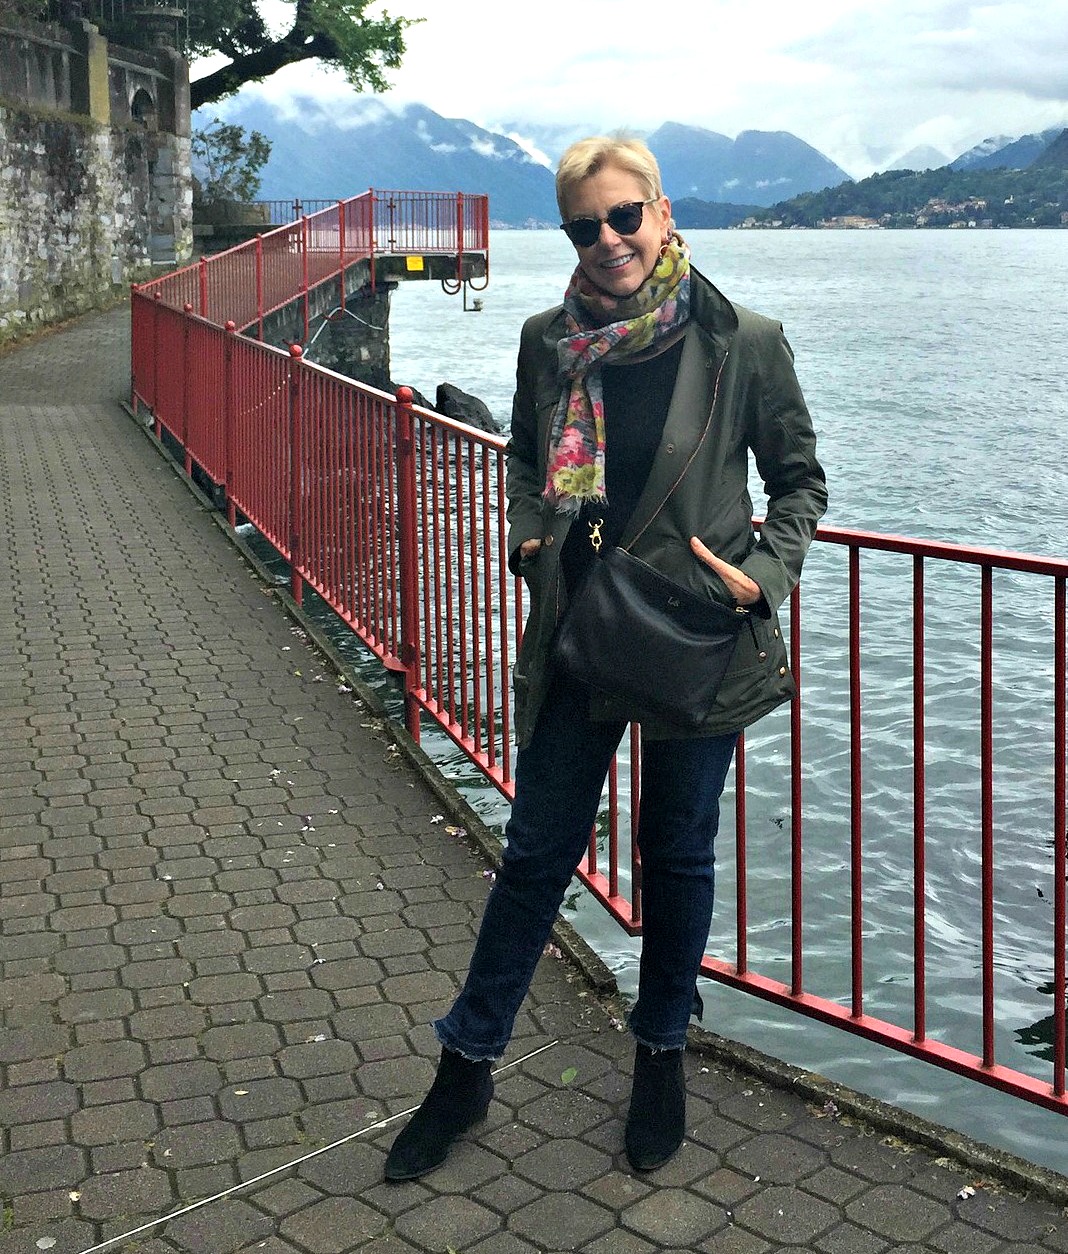 Exploring Lake Como in my favorite travel shoes. Details at une femme d'un certain age.